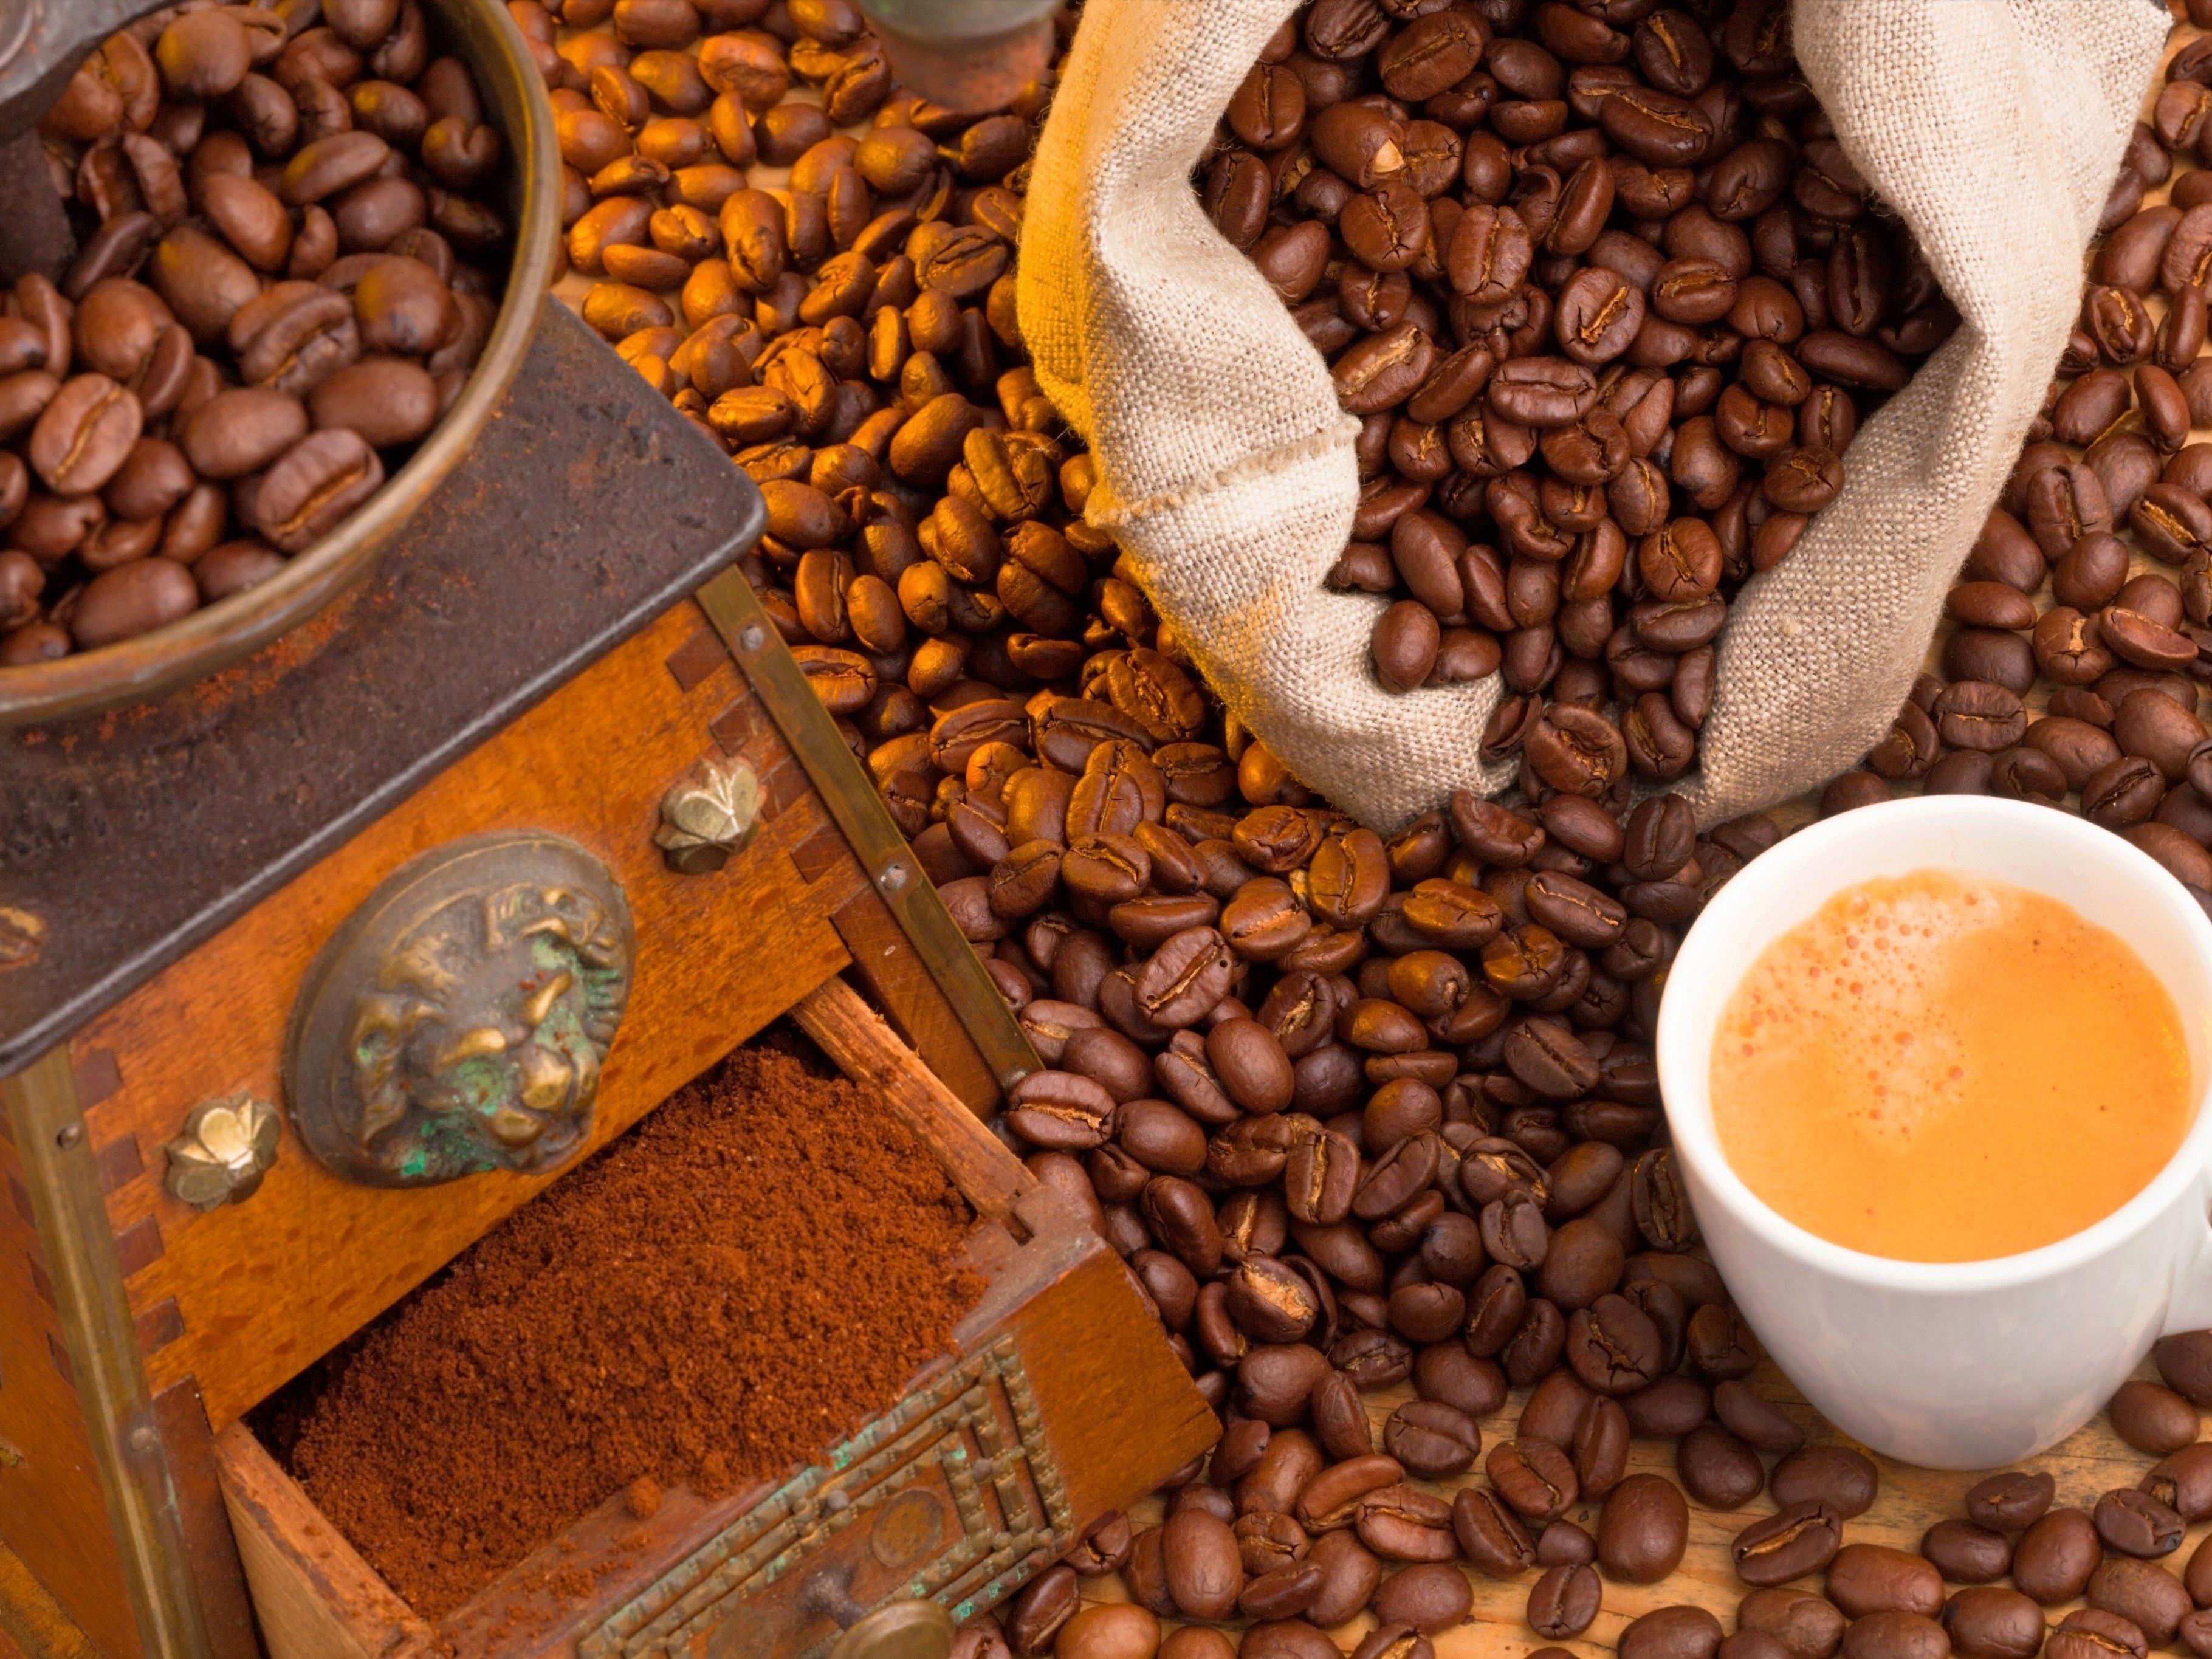 Junge Kaffeetrinker legen Wert auf nachhaltige Produktion.